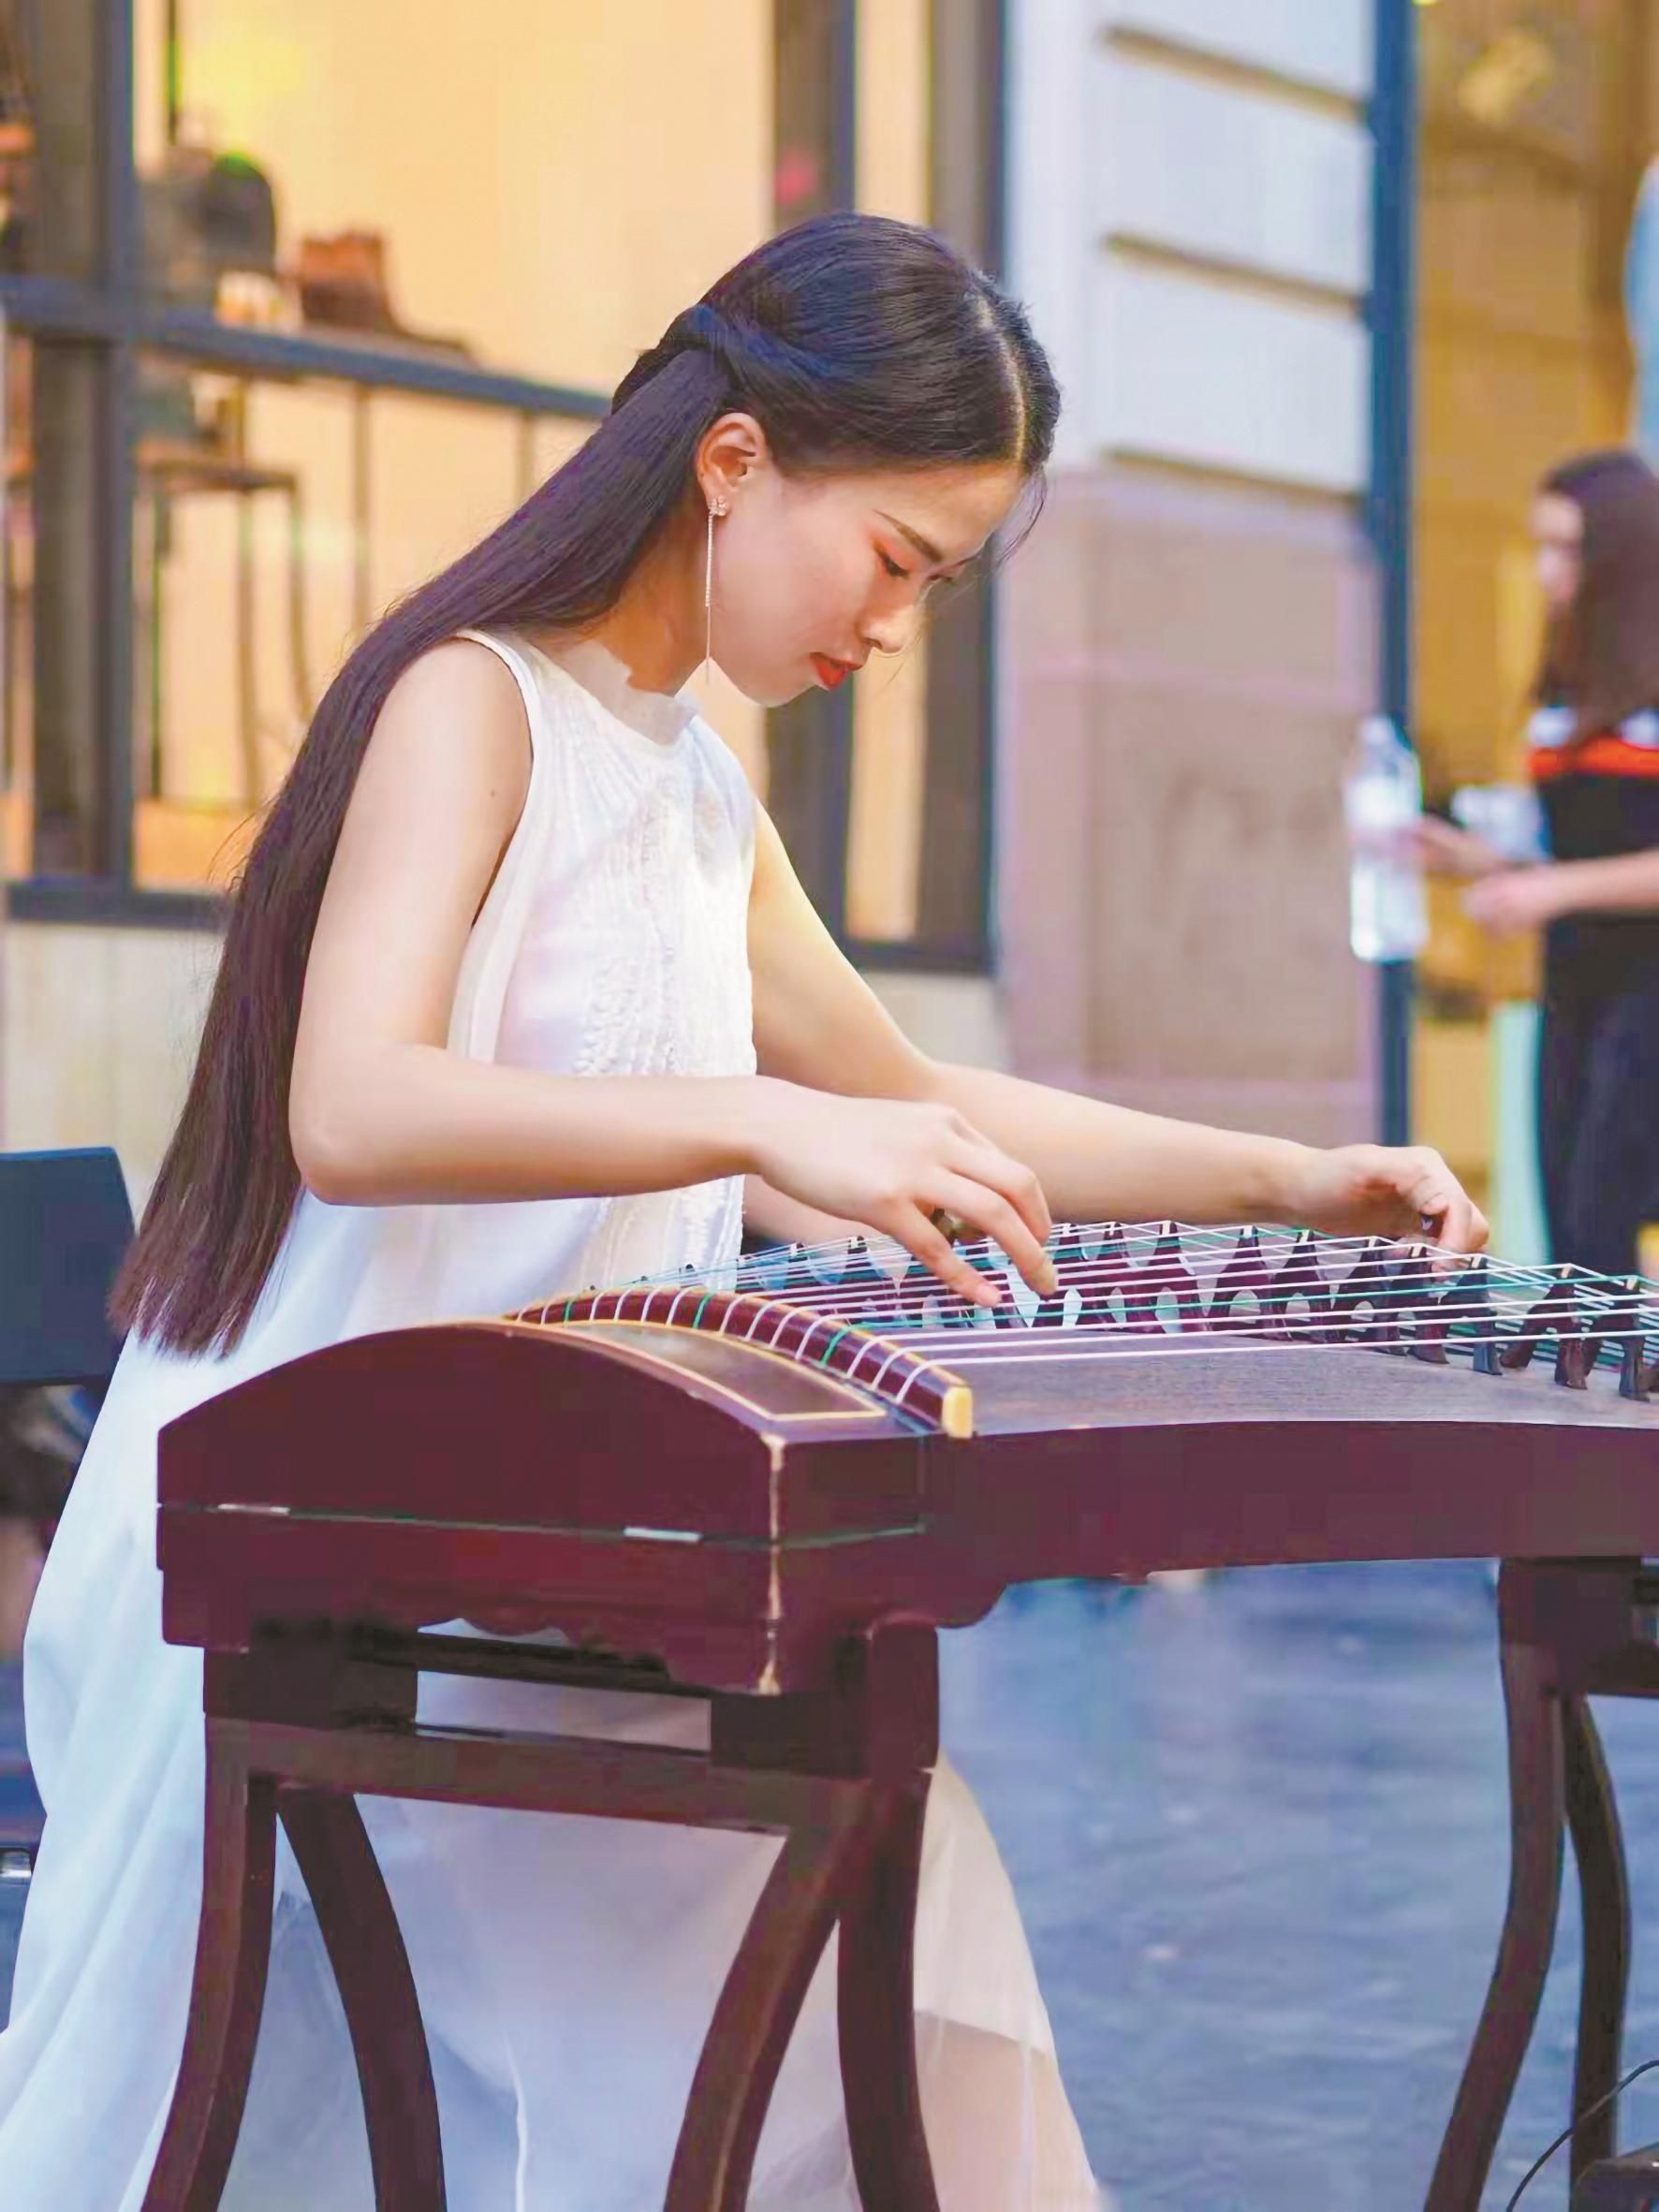 武音毕业的湘妹子法国街头弹奏古筝 致力传播中国民族音乐